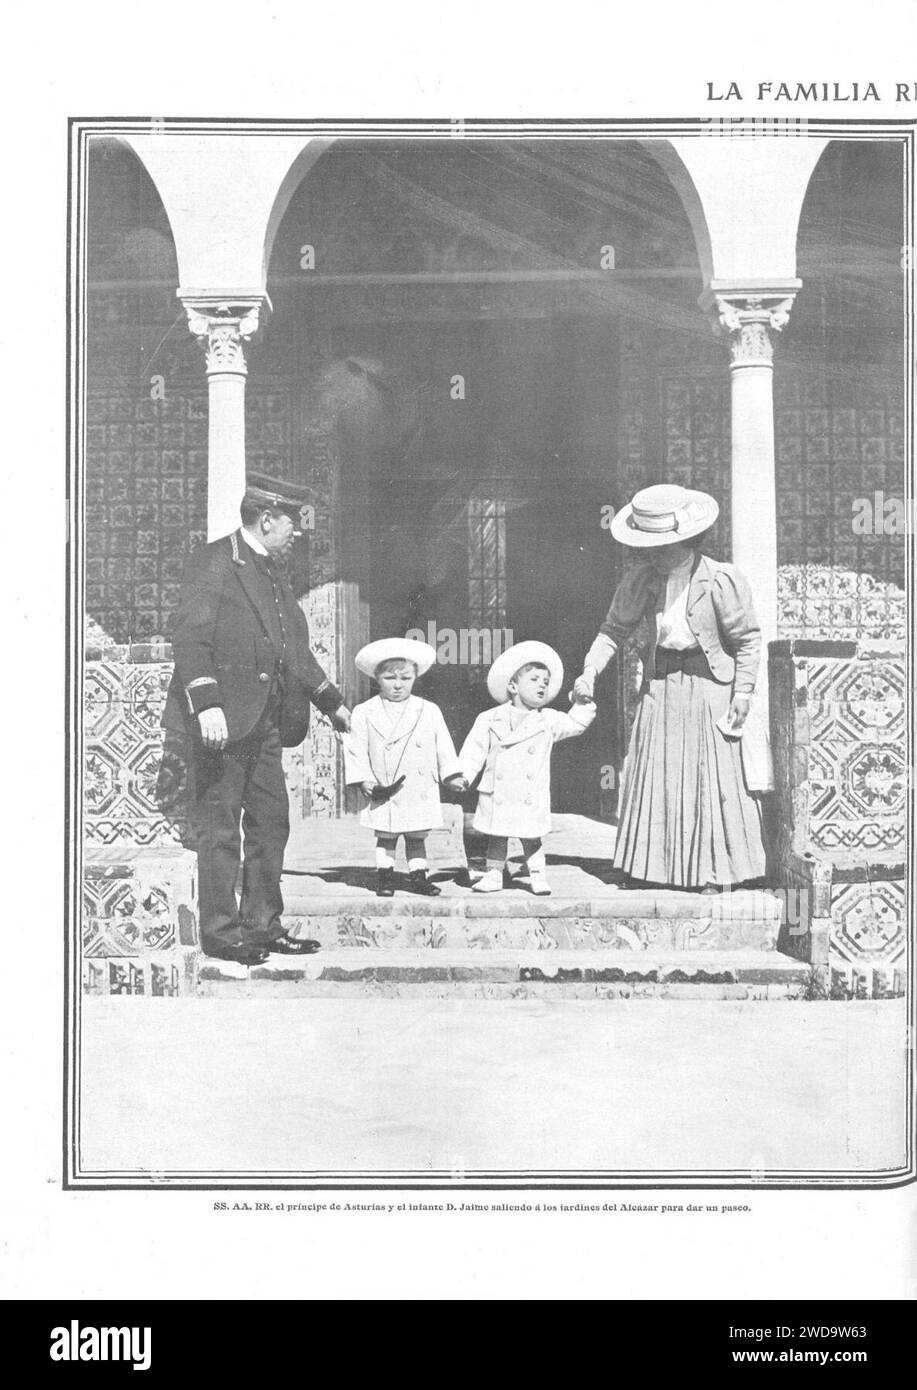 1910-03-10, Actualidades, La familia real en Sevilla, El príncipe de Asturias y el infante Jaime saliendo a los jardines del Alcázar para dar un paseo, Barrera. Stock Photo